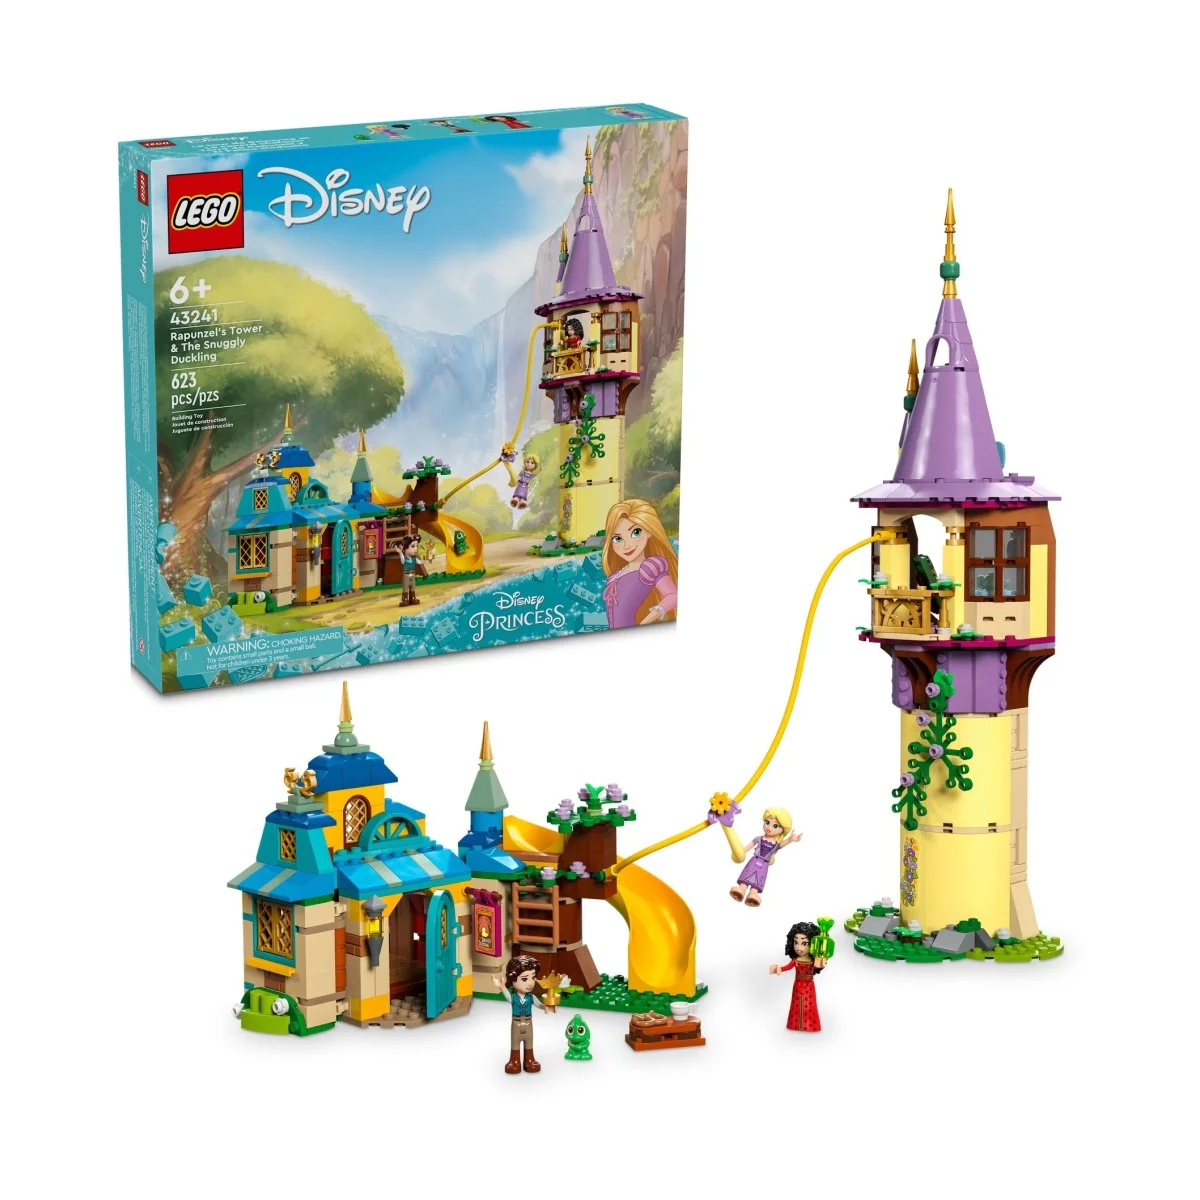 Конструктор Lego Disney Rapunzel's Tower & The Snuggly Duckling 43241, 623 детали bullyland набор коллекционных фигурок рапунцель запутанная история рапунцель и паскаль